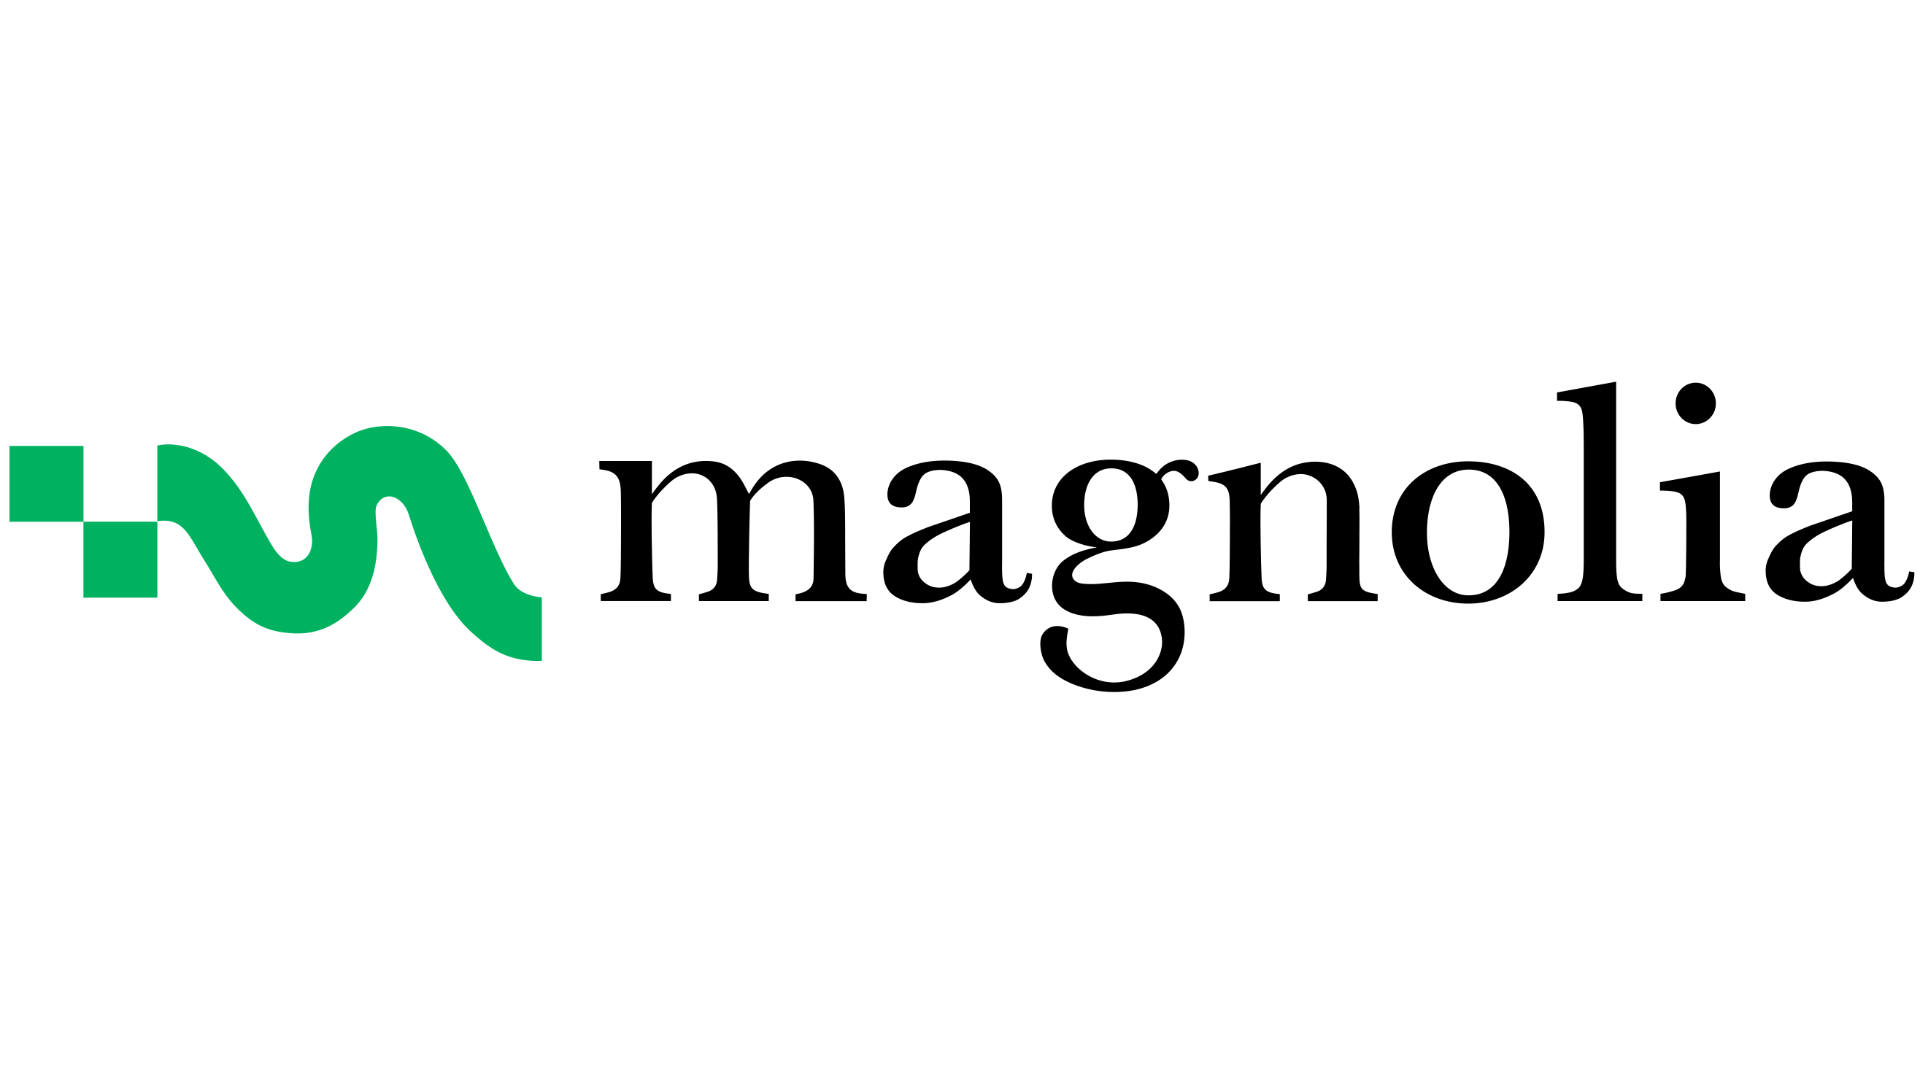 Logo Magnolia